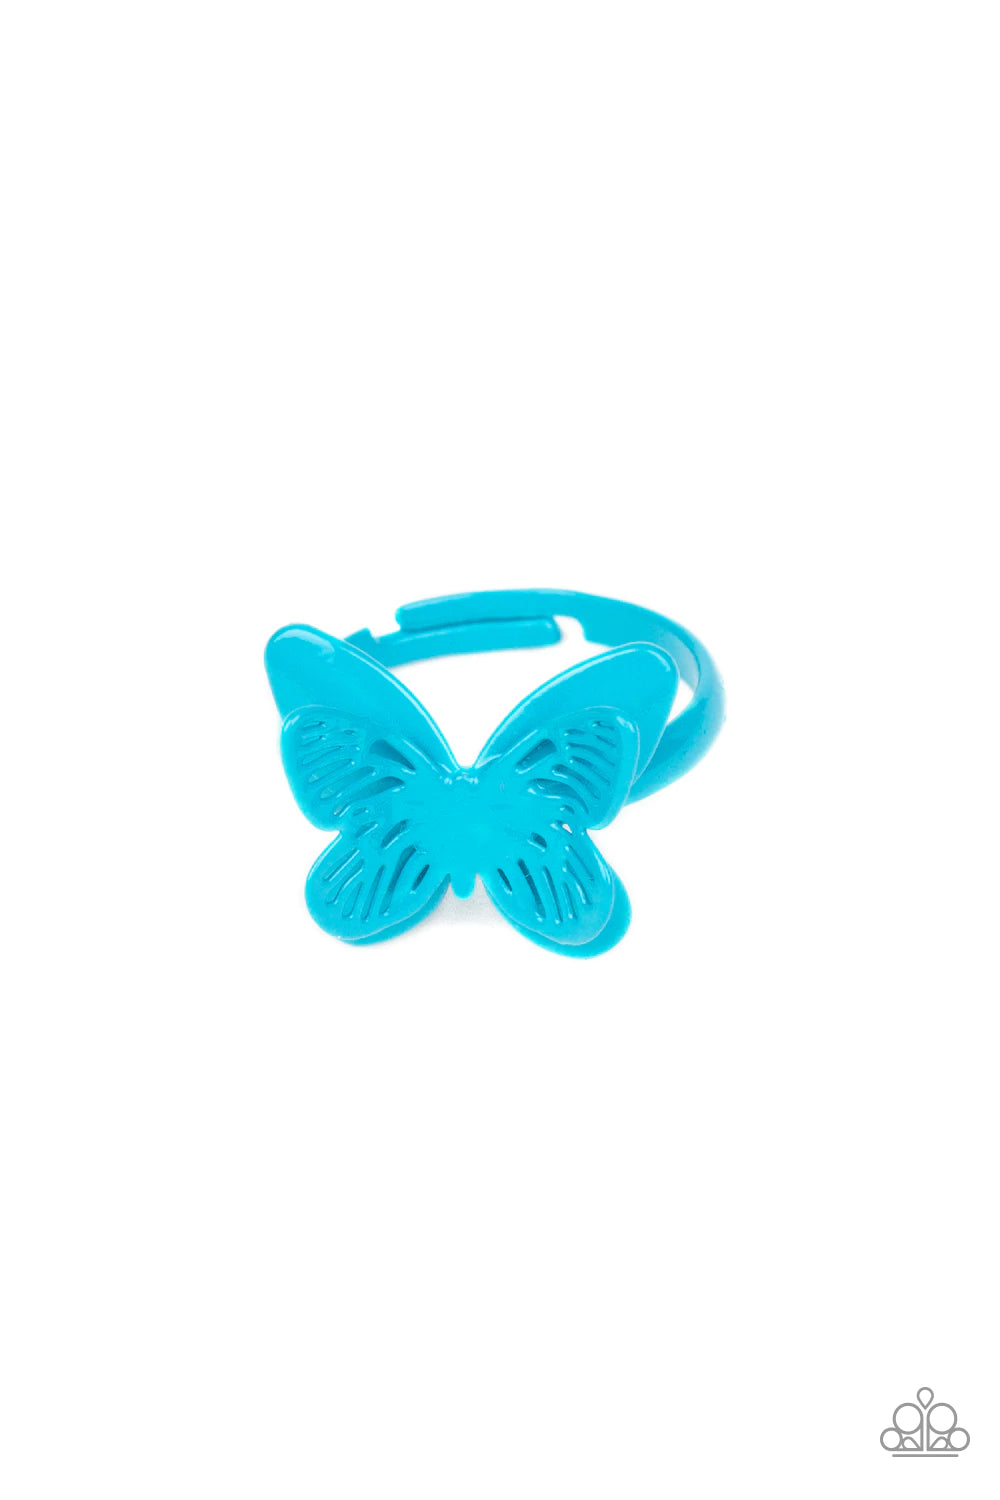 Starlet Shimmer 3D Butterfly Ring Kit